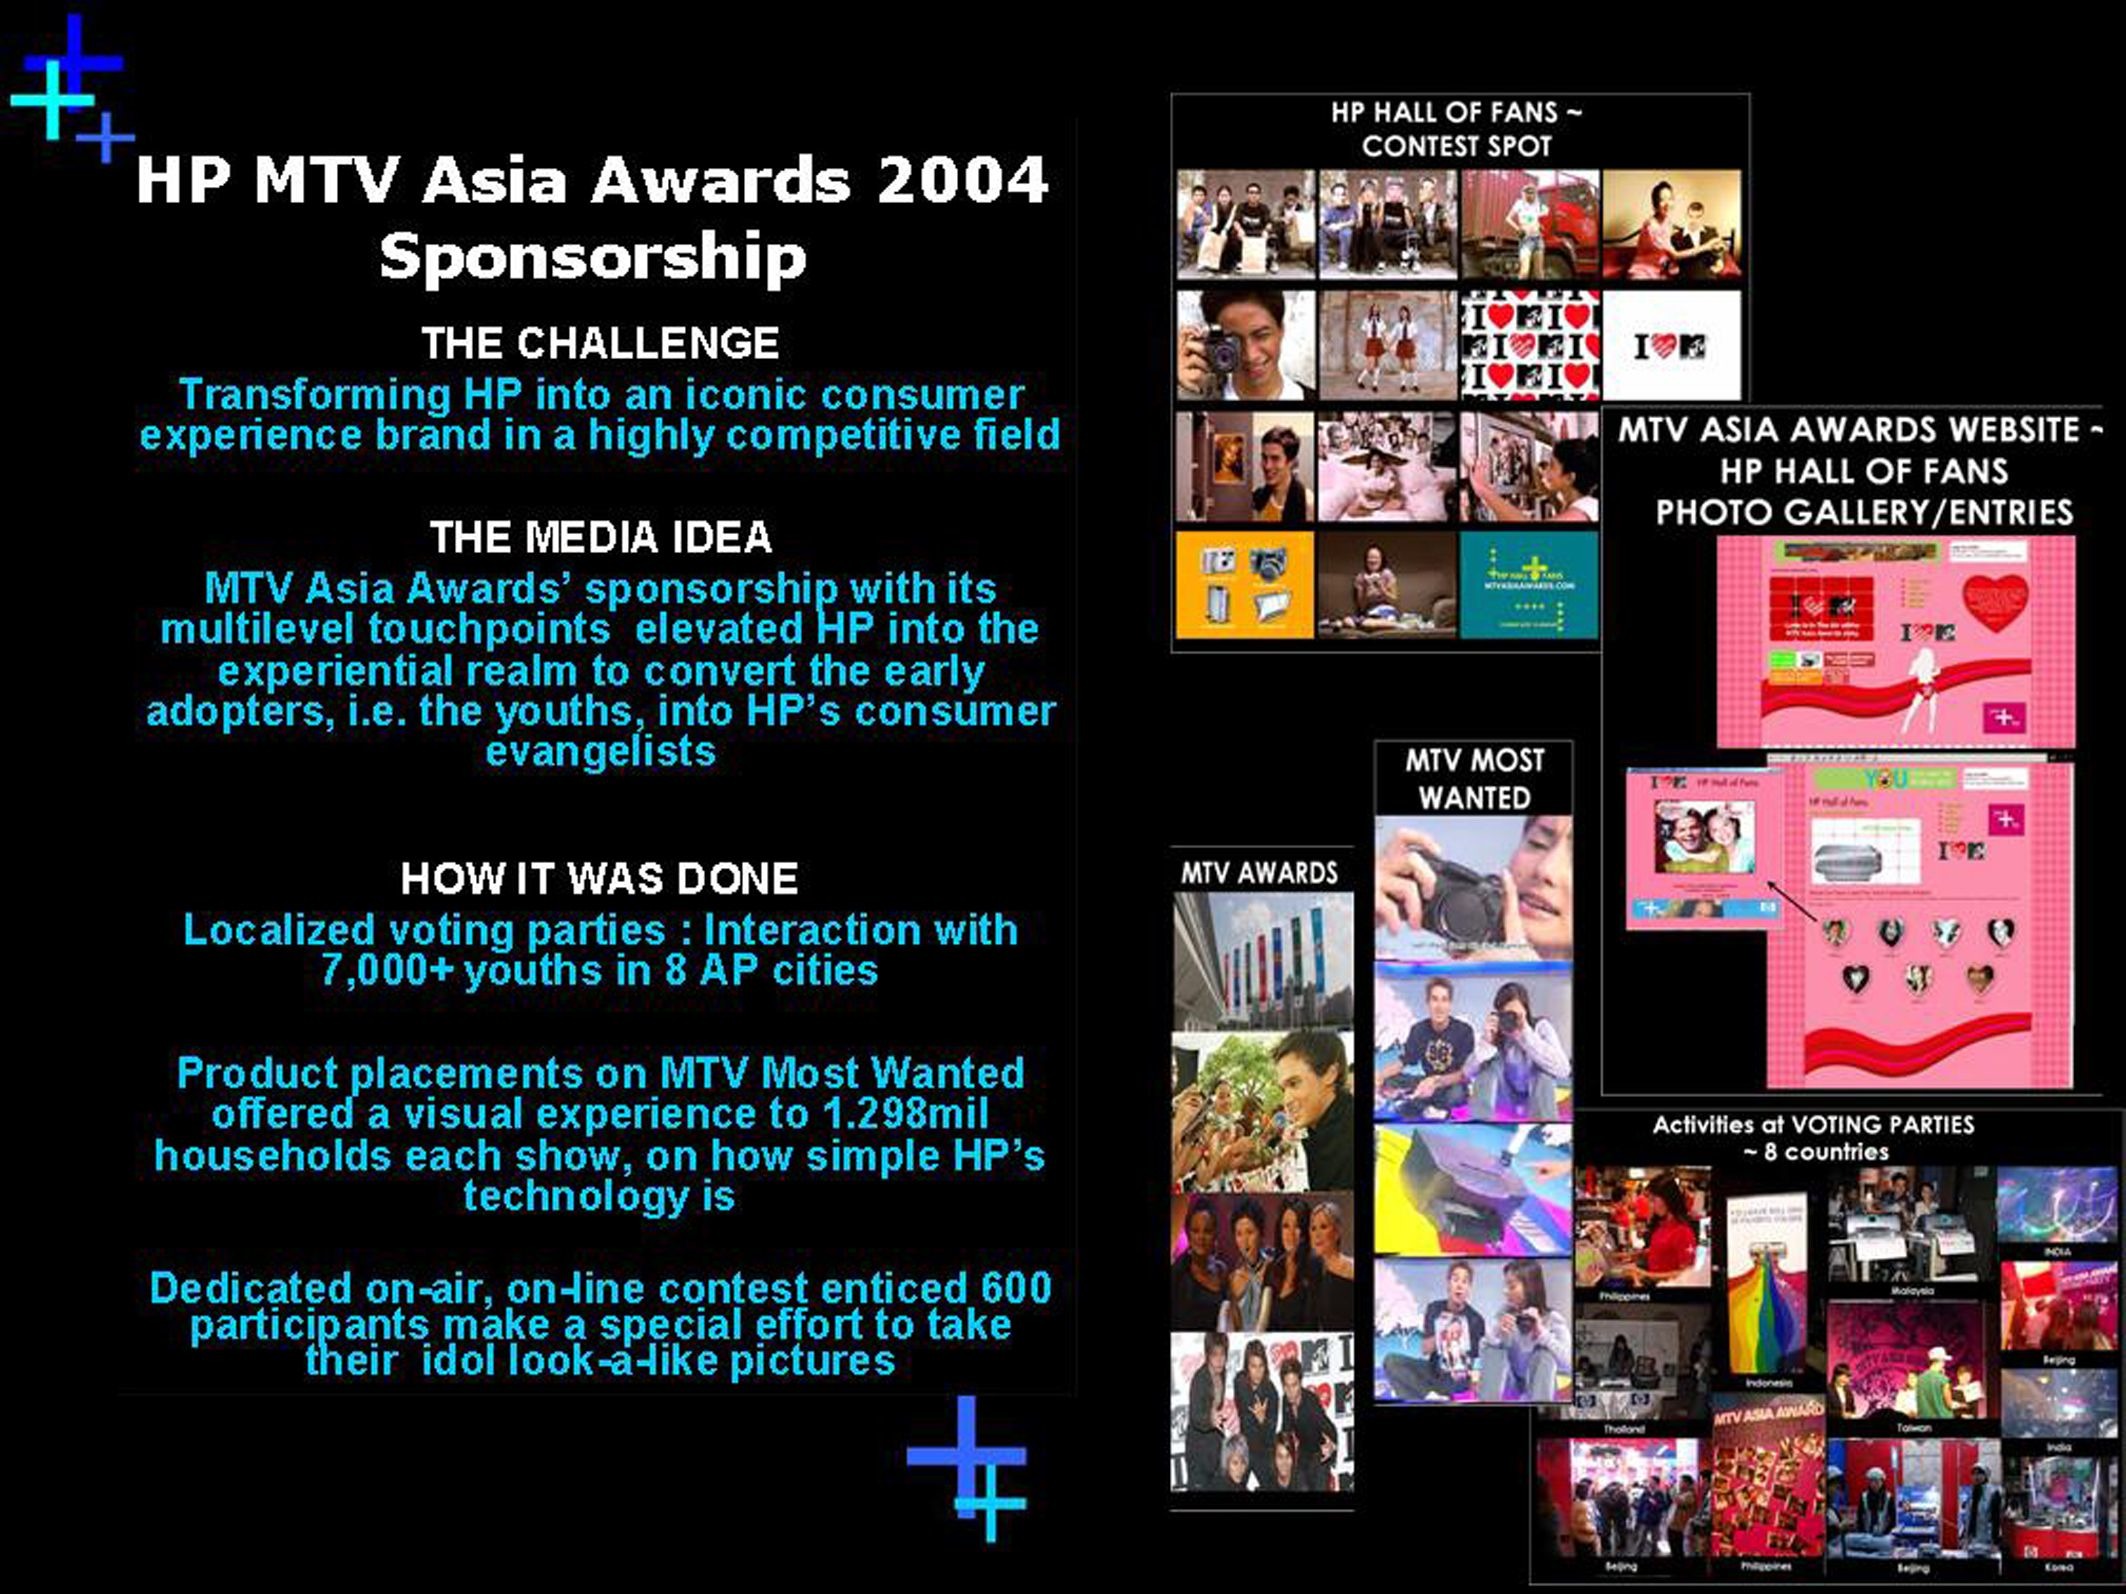 HP MTV ASIA AWARDS 2004